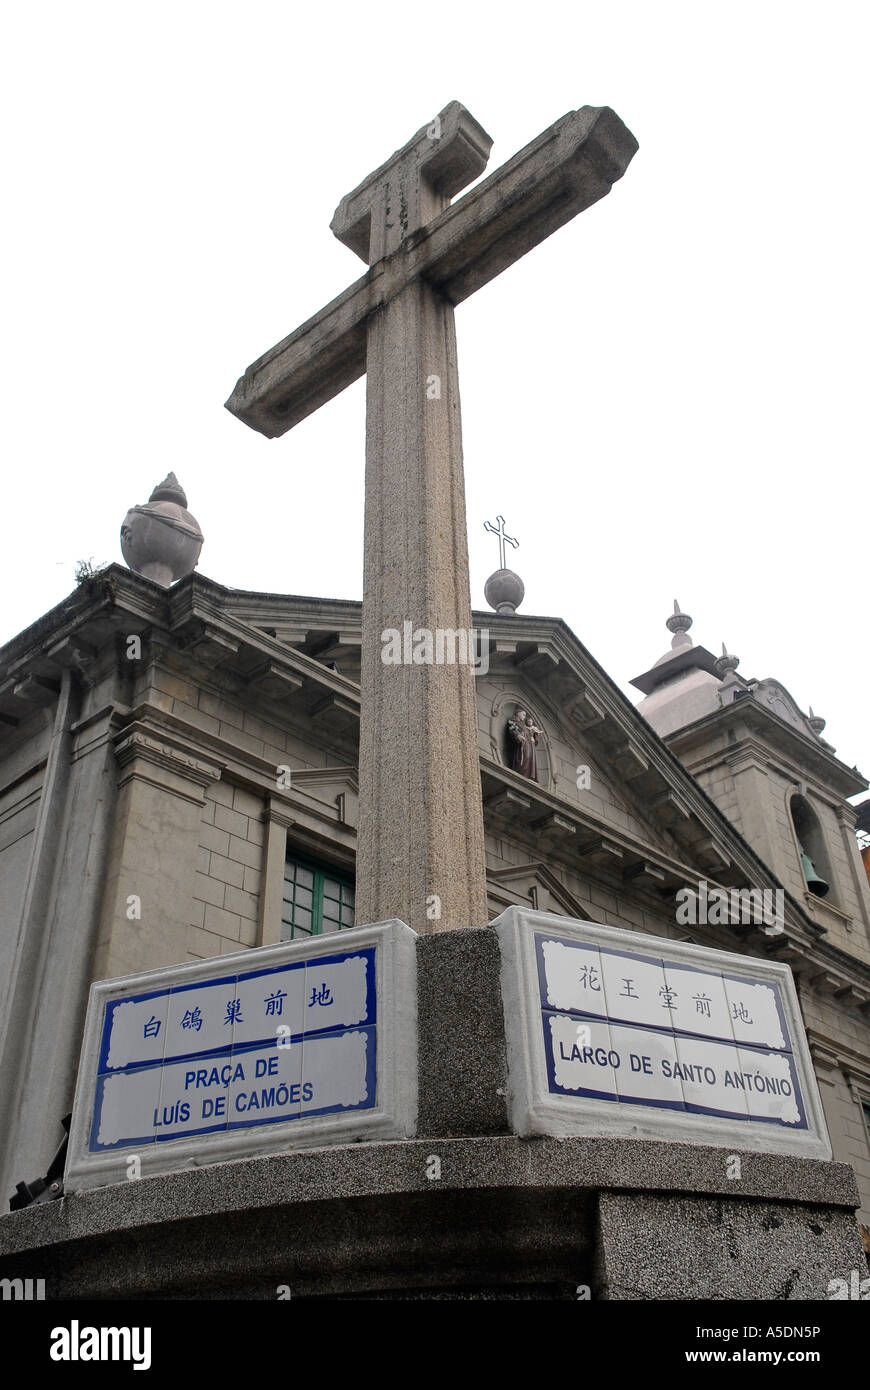 L'extérieur de l'Igrejia Santo Antonio ou église de Saint Antoine à Macao, Chine Banque D'Images